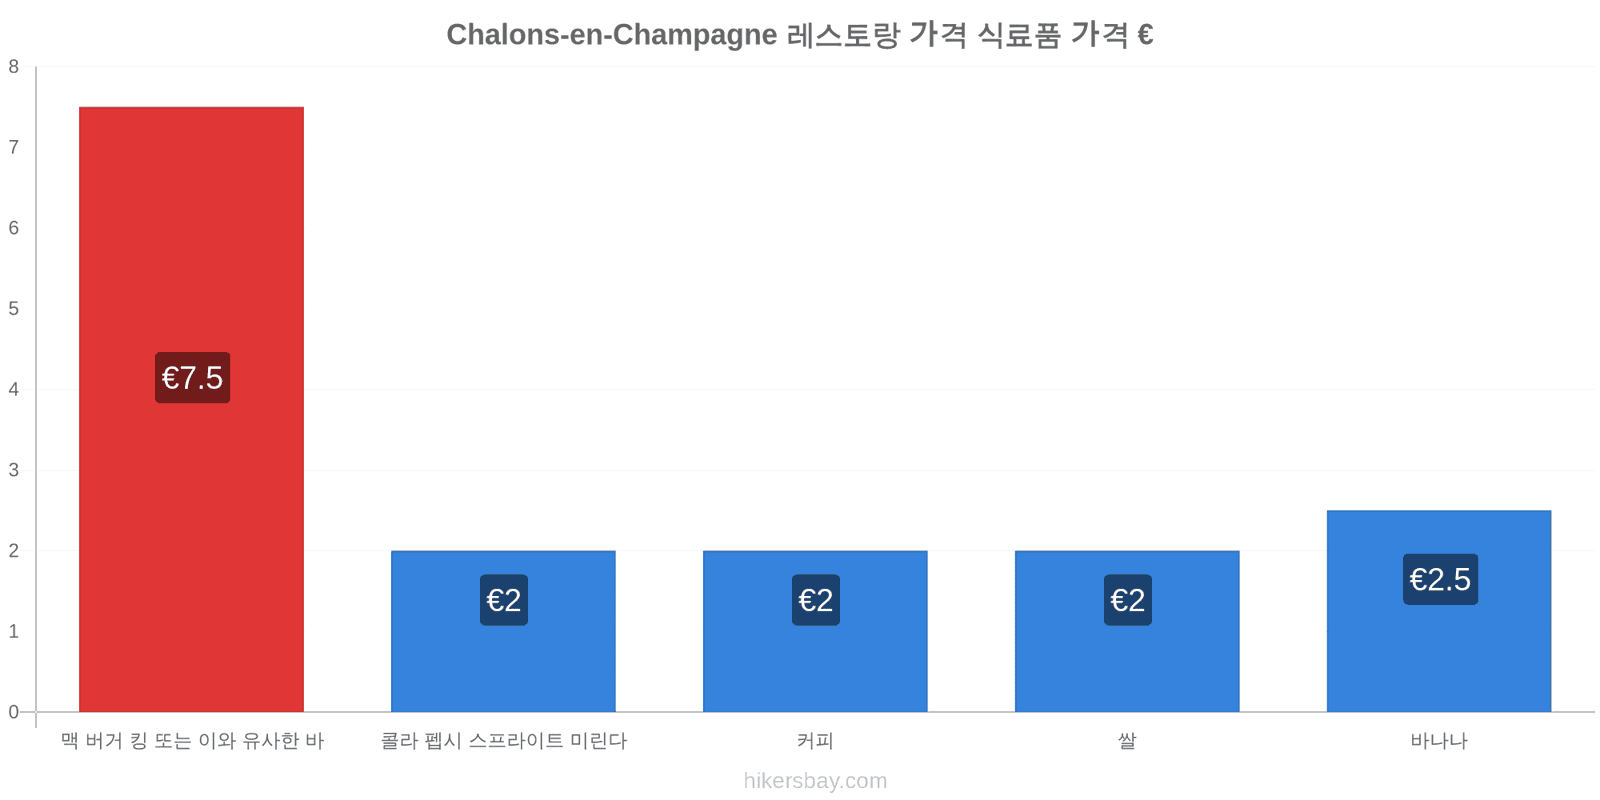 Chalons-en-Champagne 가격 변동 hikersbay.com